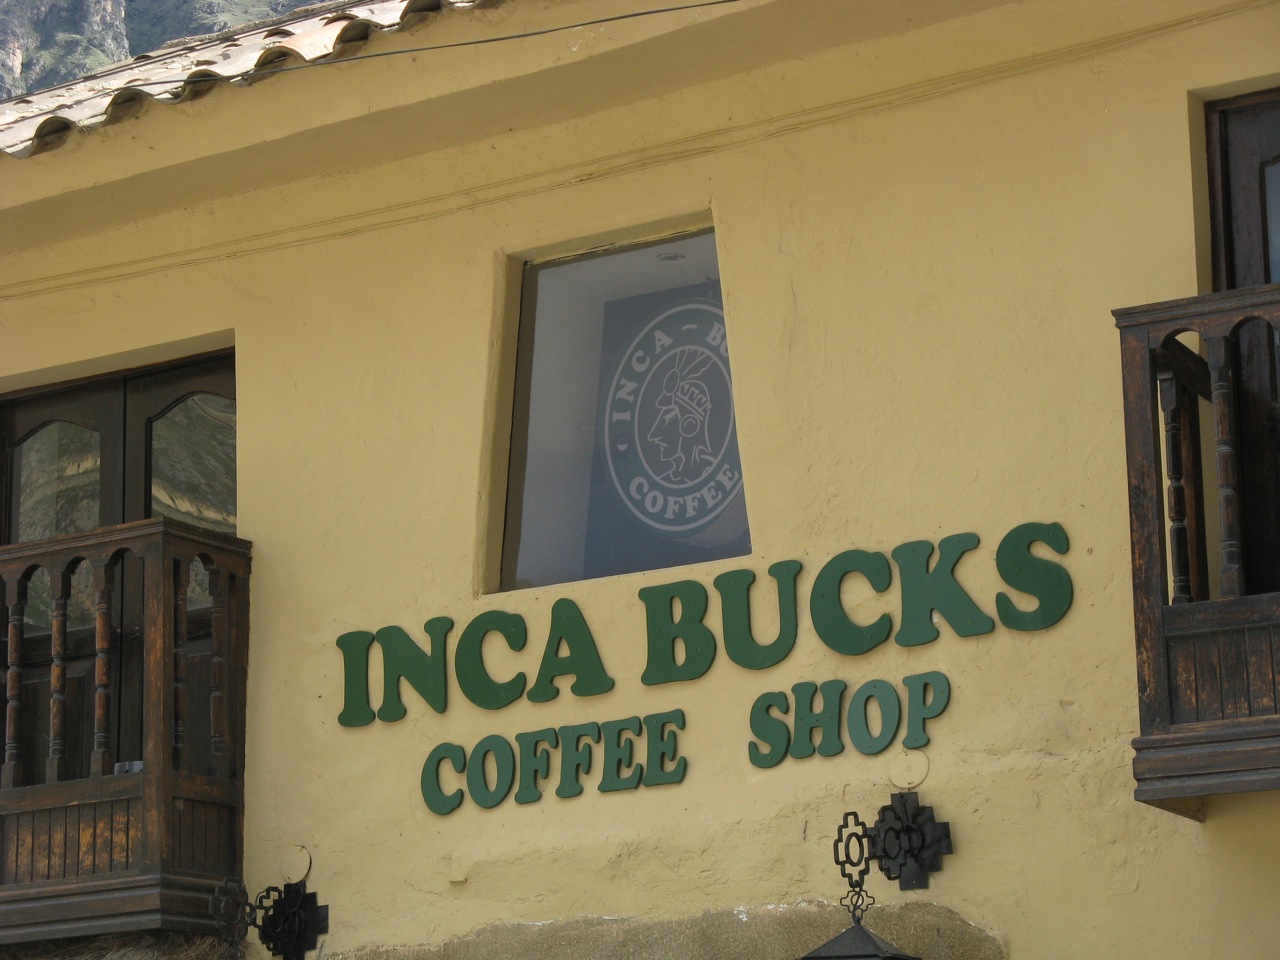 Inca Bucks